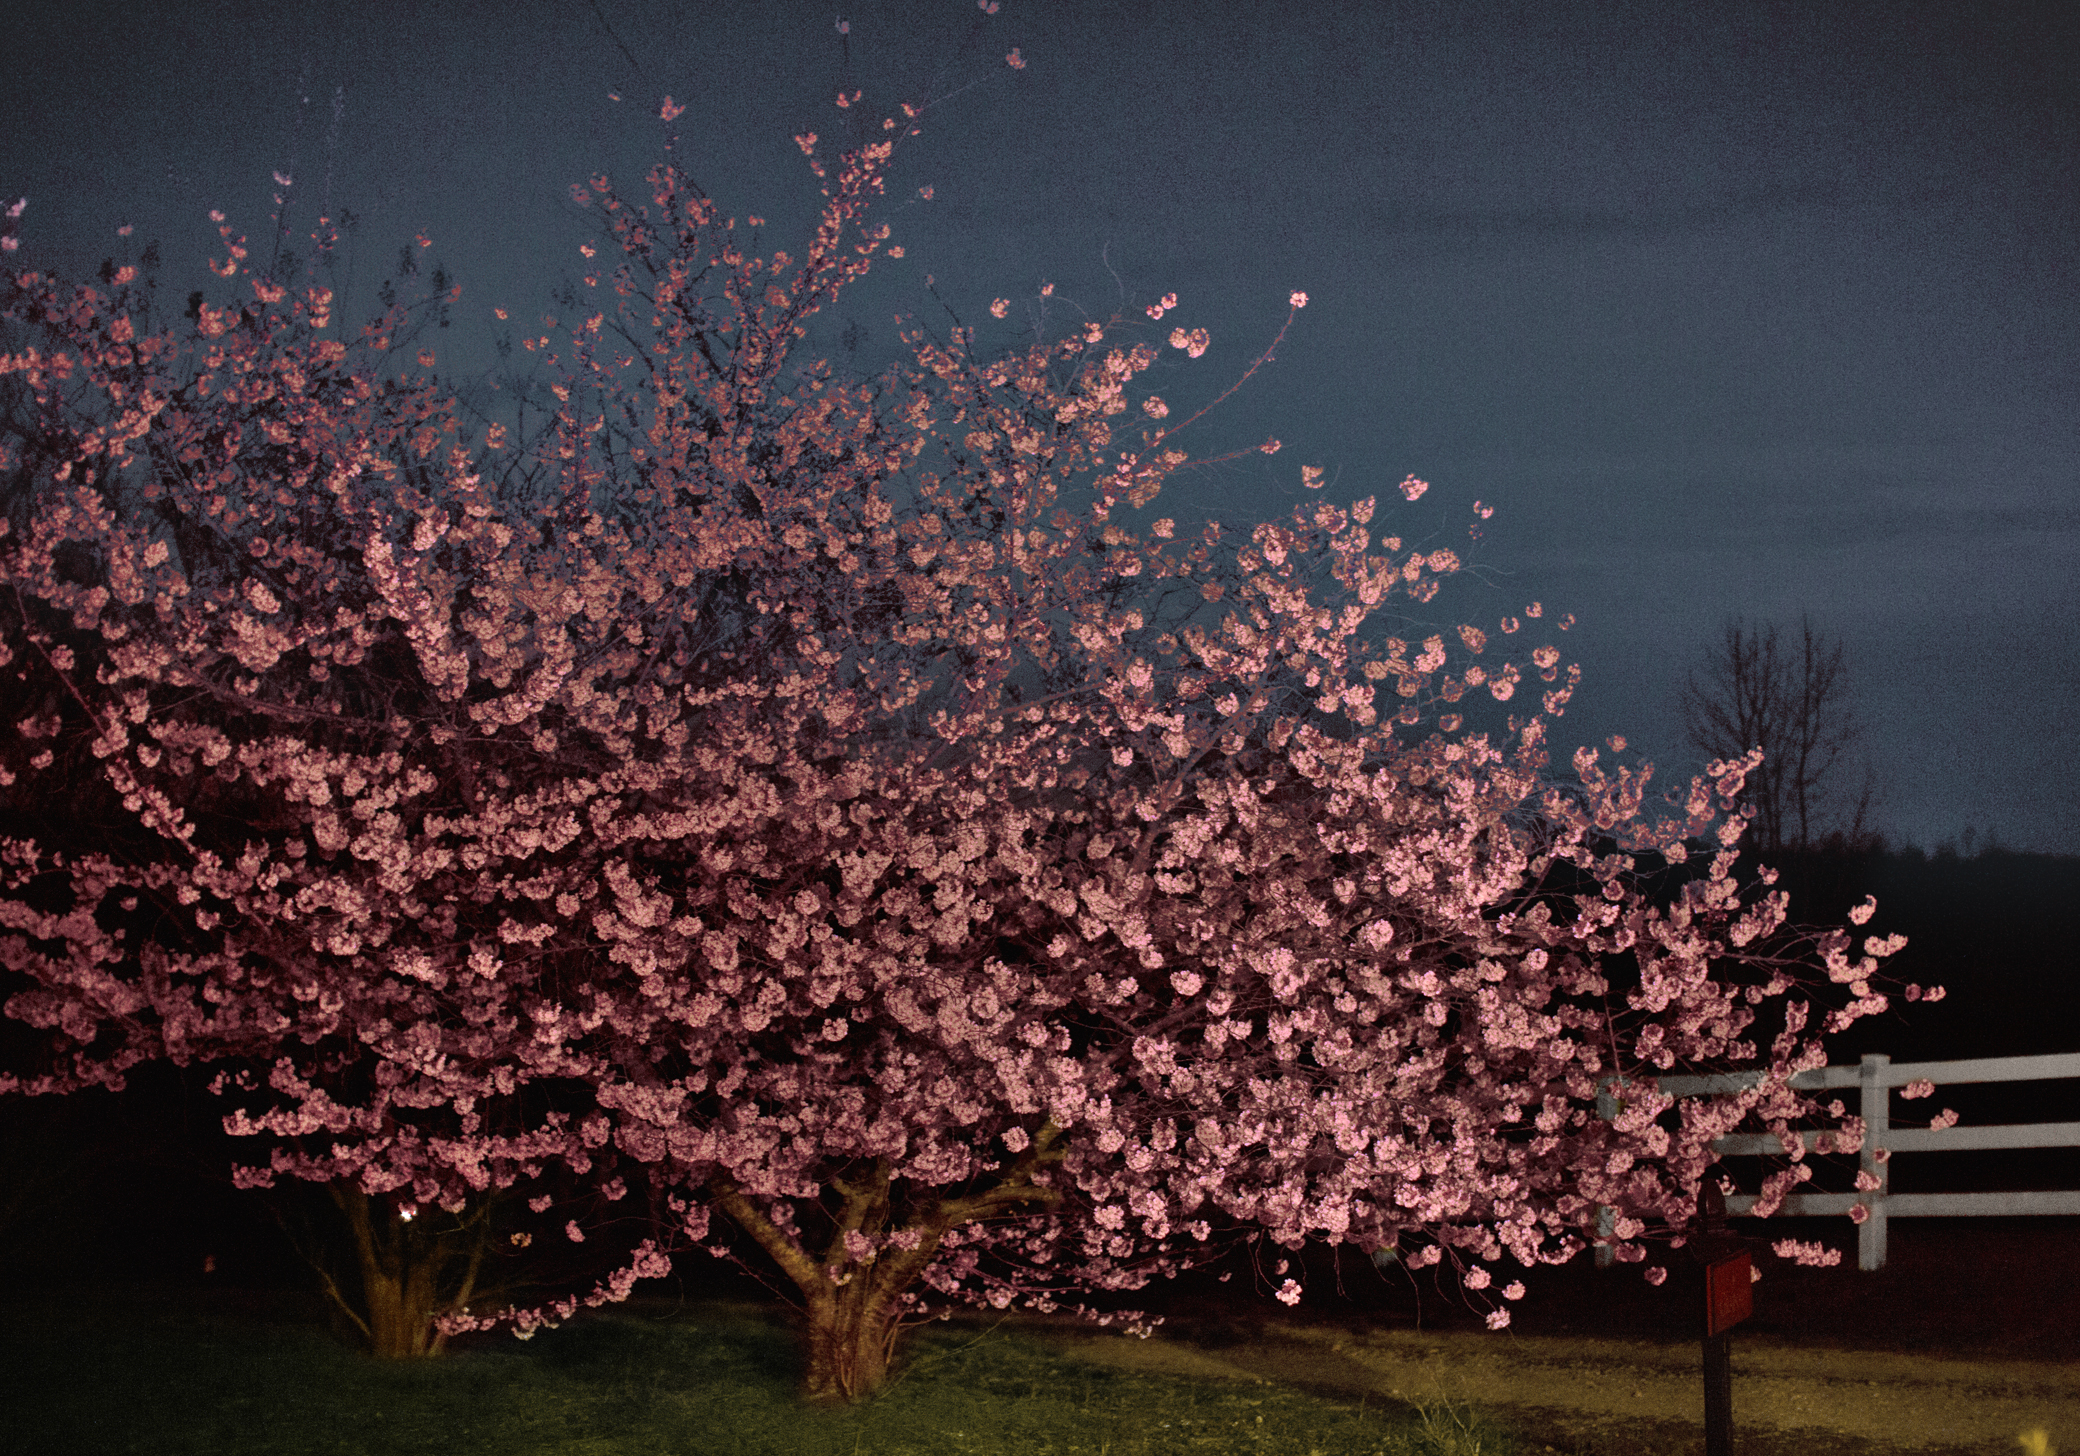 emily nathan tiny atlas south carolina 19 cherry blossom tree night